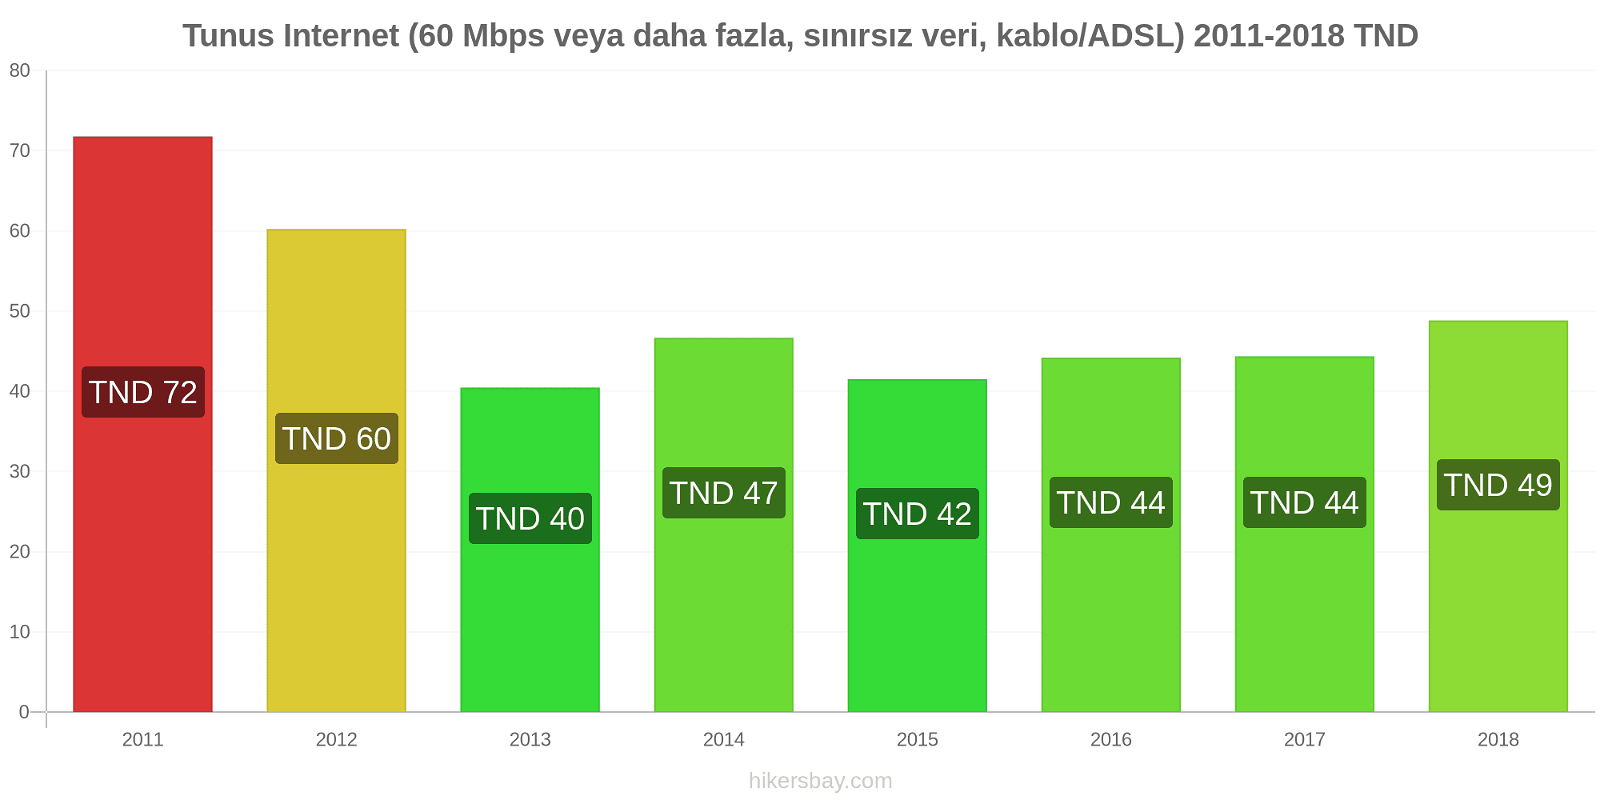 Tunus fiyat değişiklikleri İnternet (60 Mbps veya daha fazla, sınırsız veri, kablo/ADSL) hikersbay.com